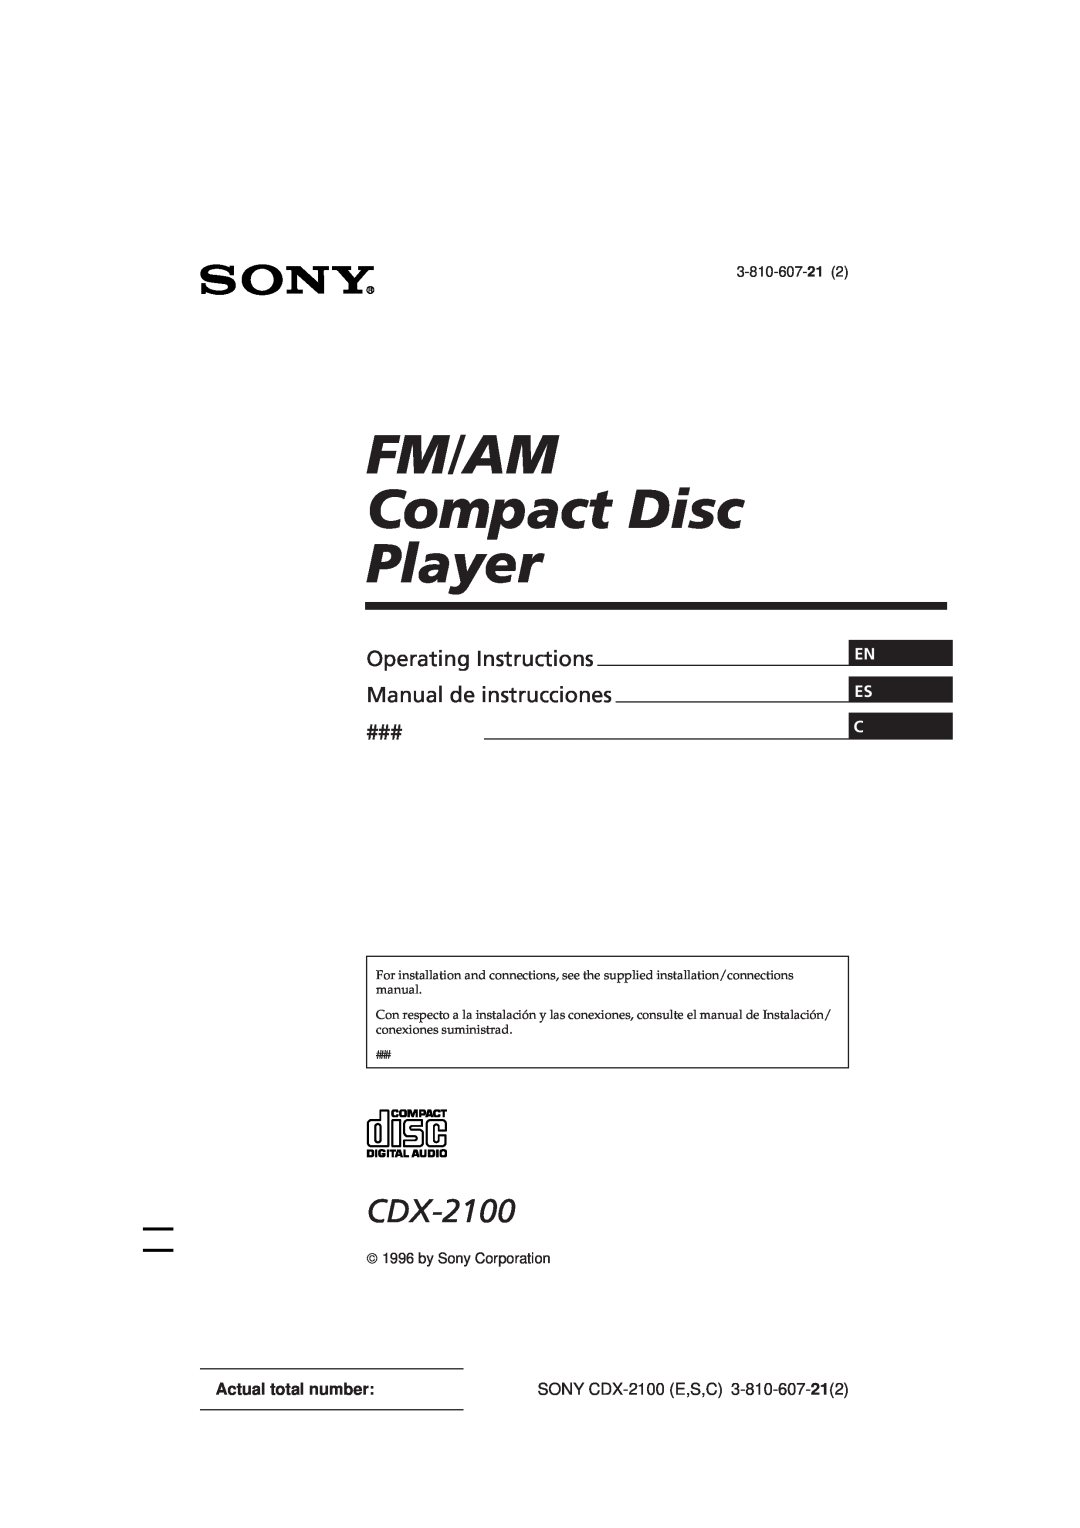 Sony manual En Es C, SONY CDX-2100E,S,C, FM/AM Compact Disc Player, Operating Instructions Manual de instrucciones 